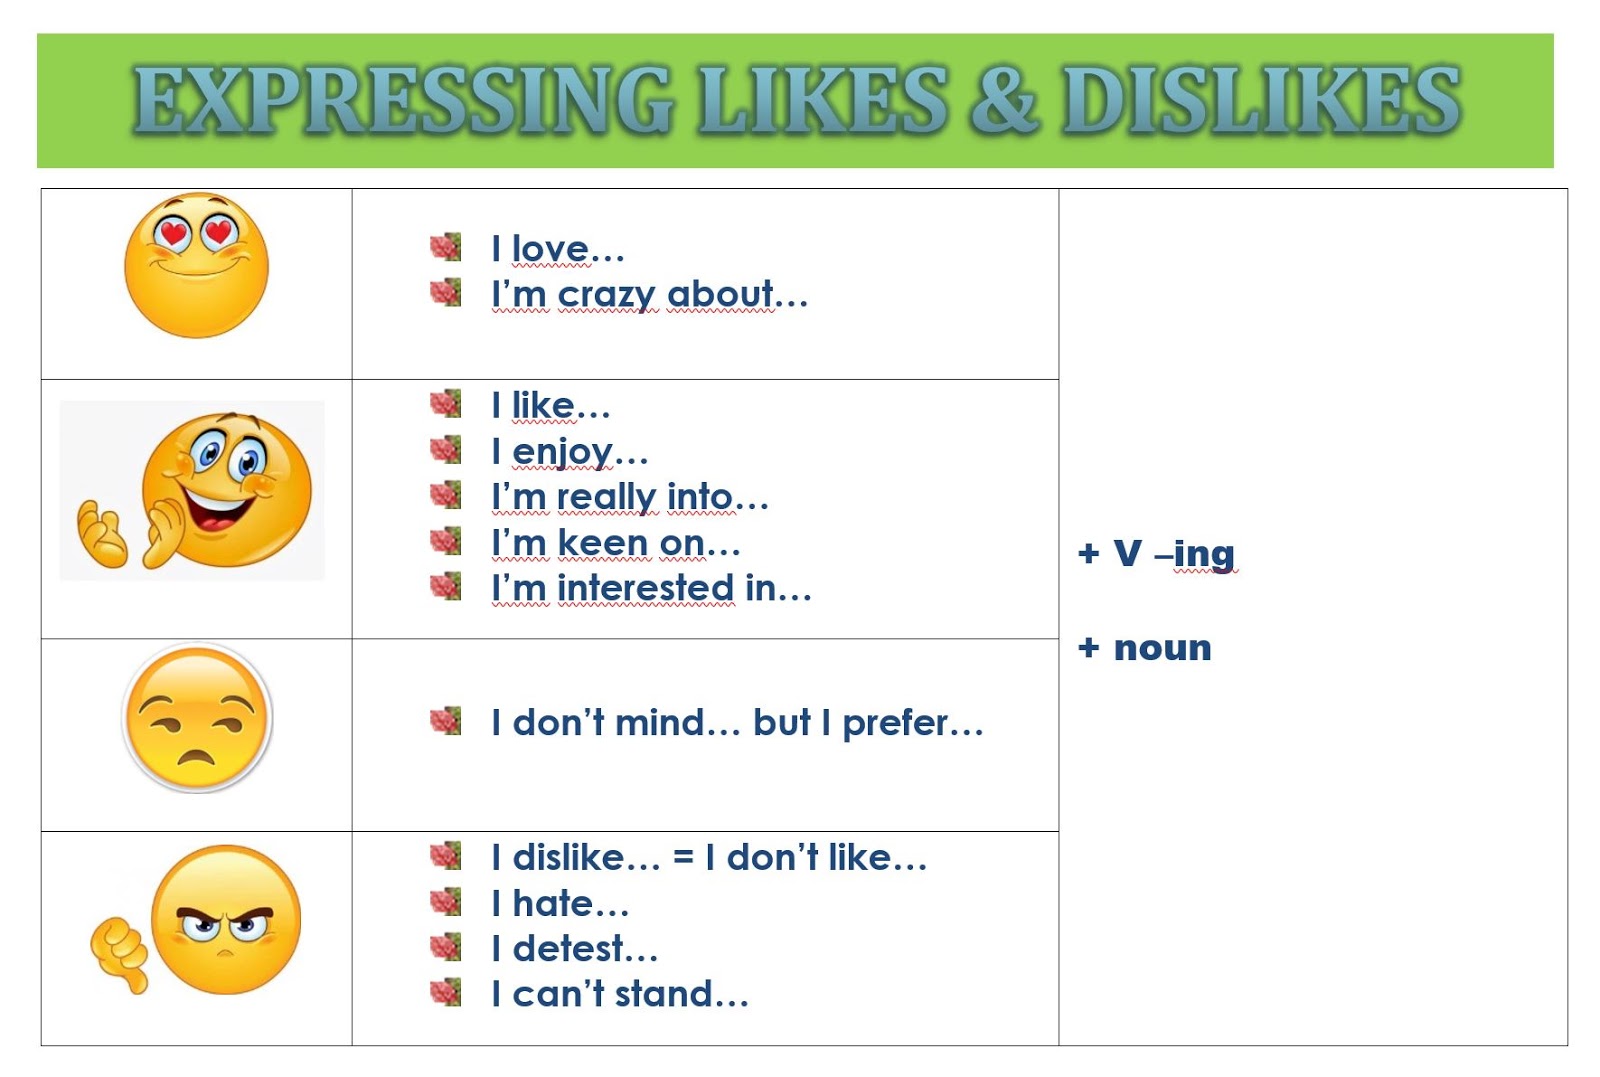 We like speaking english. Фразы like and Dislike. Expressing likes and Dislikes. Likes Dislikes в английском. Предложения с like Dislike.